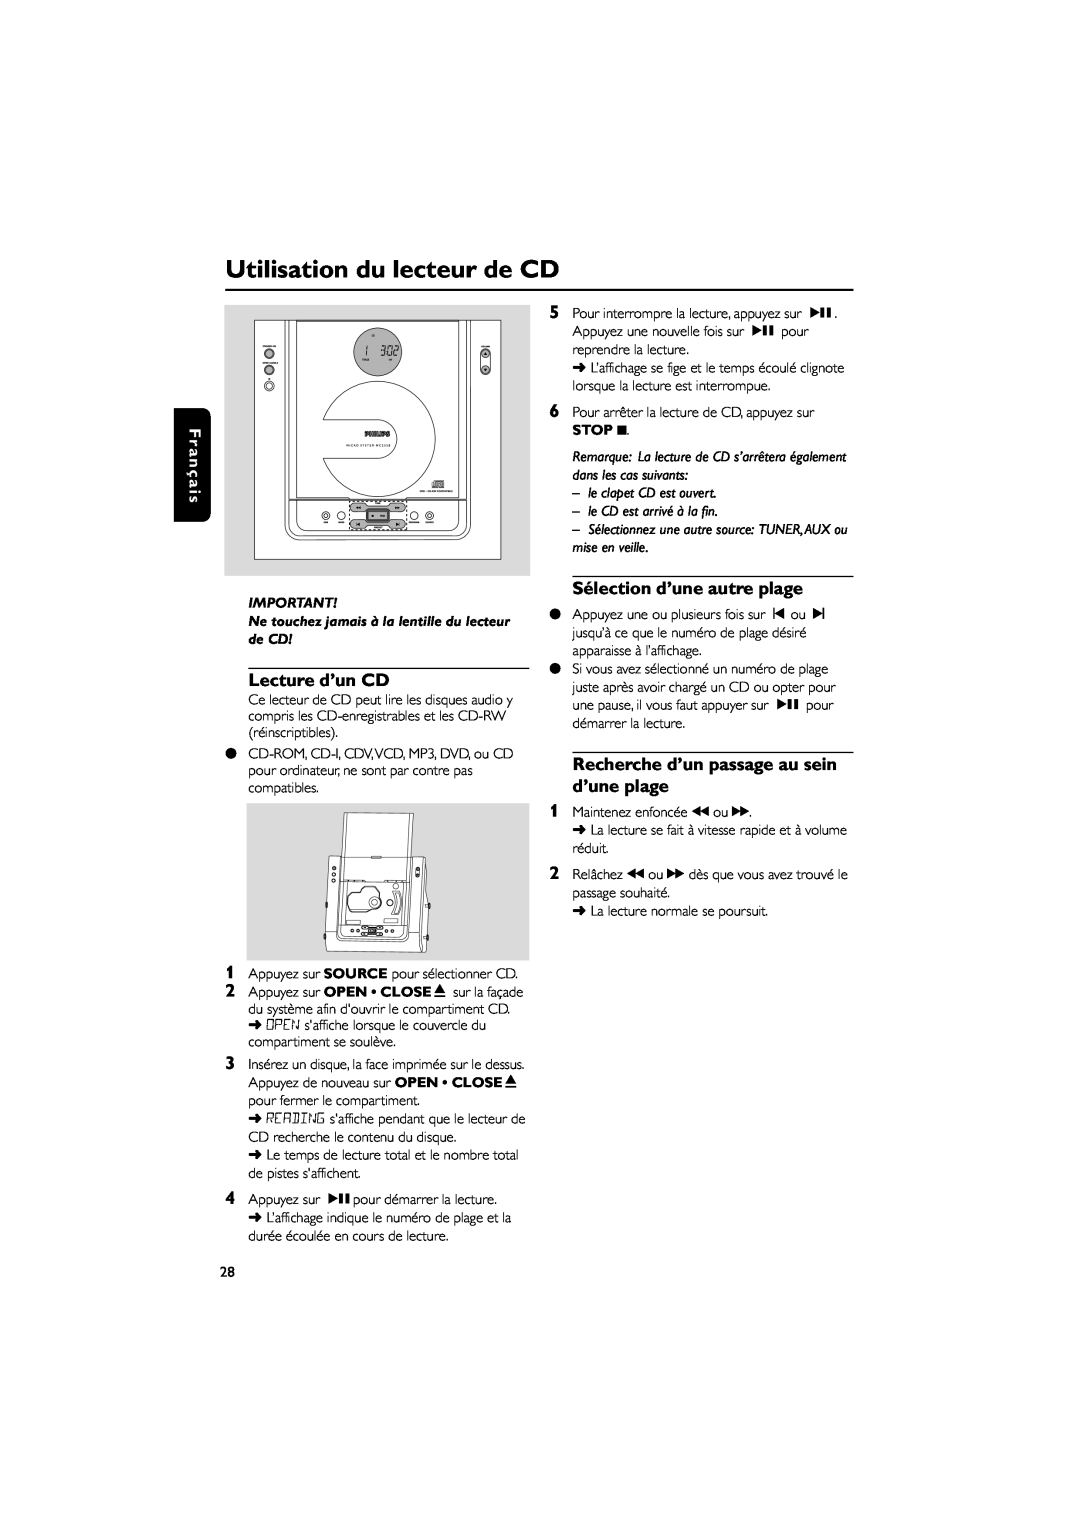 Philips MC235B/37 Utilisation du lecteur de CD, Lecture d’un CD, Sélection d’une autre plage, le clapet CD est ouvert 